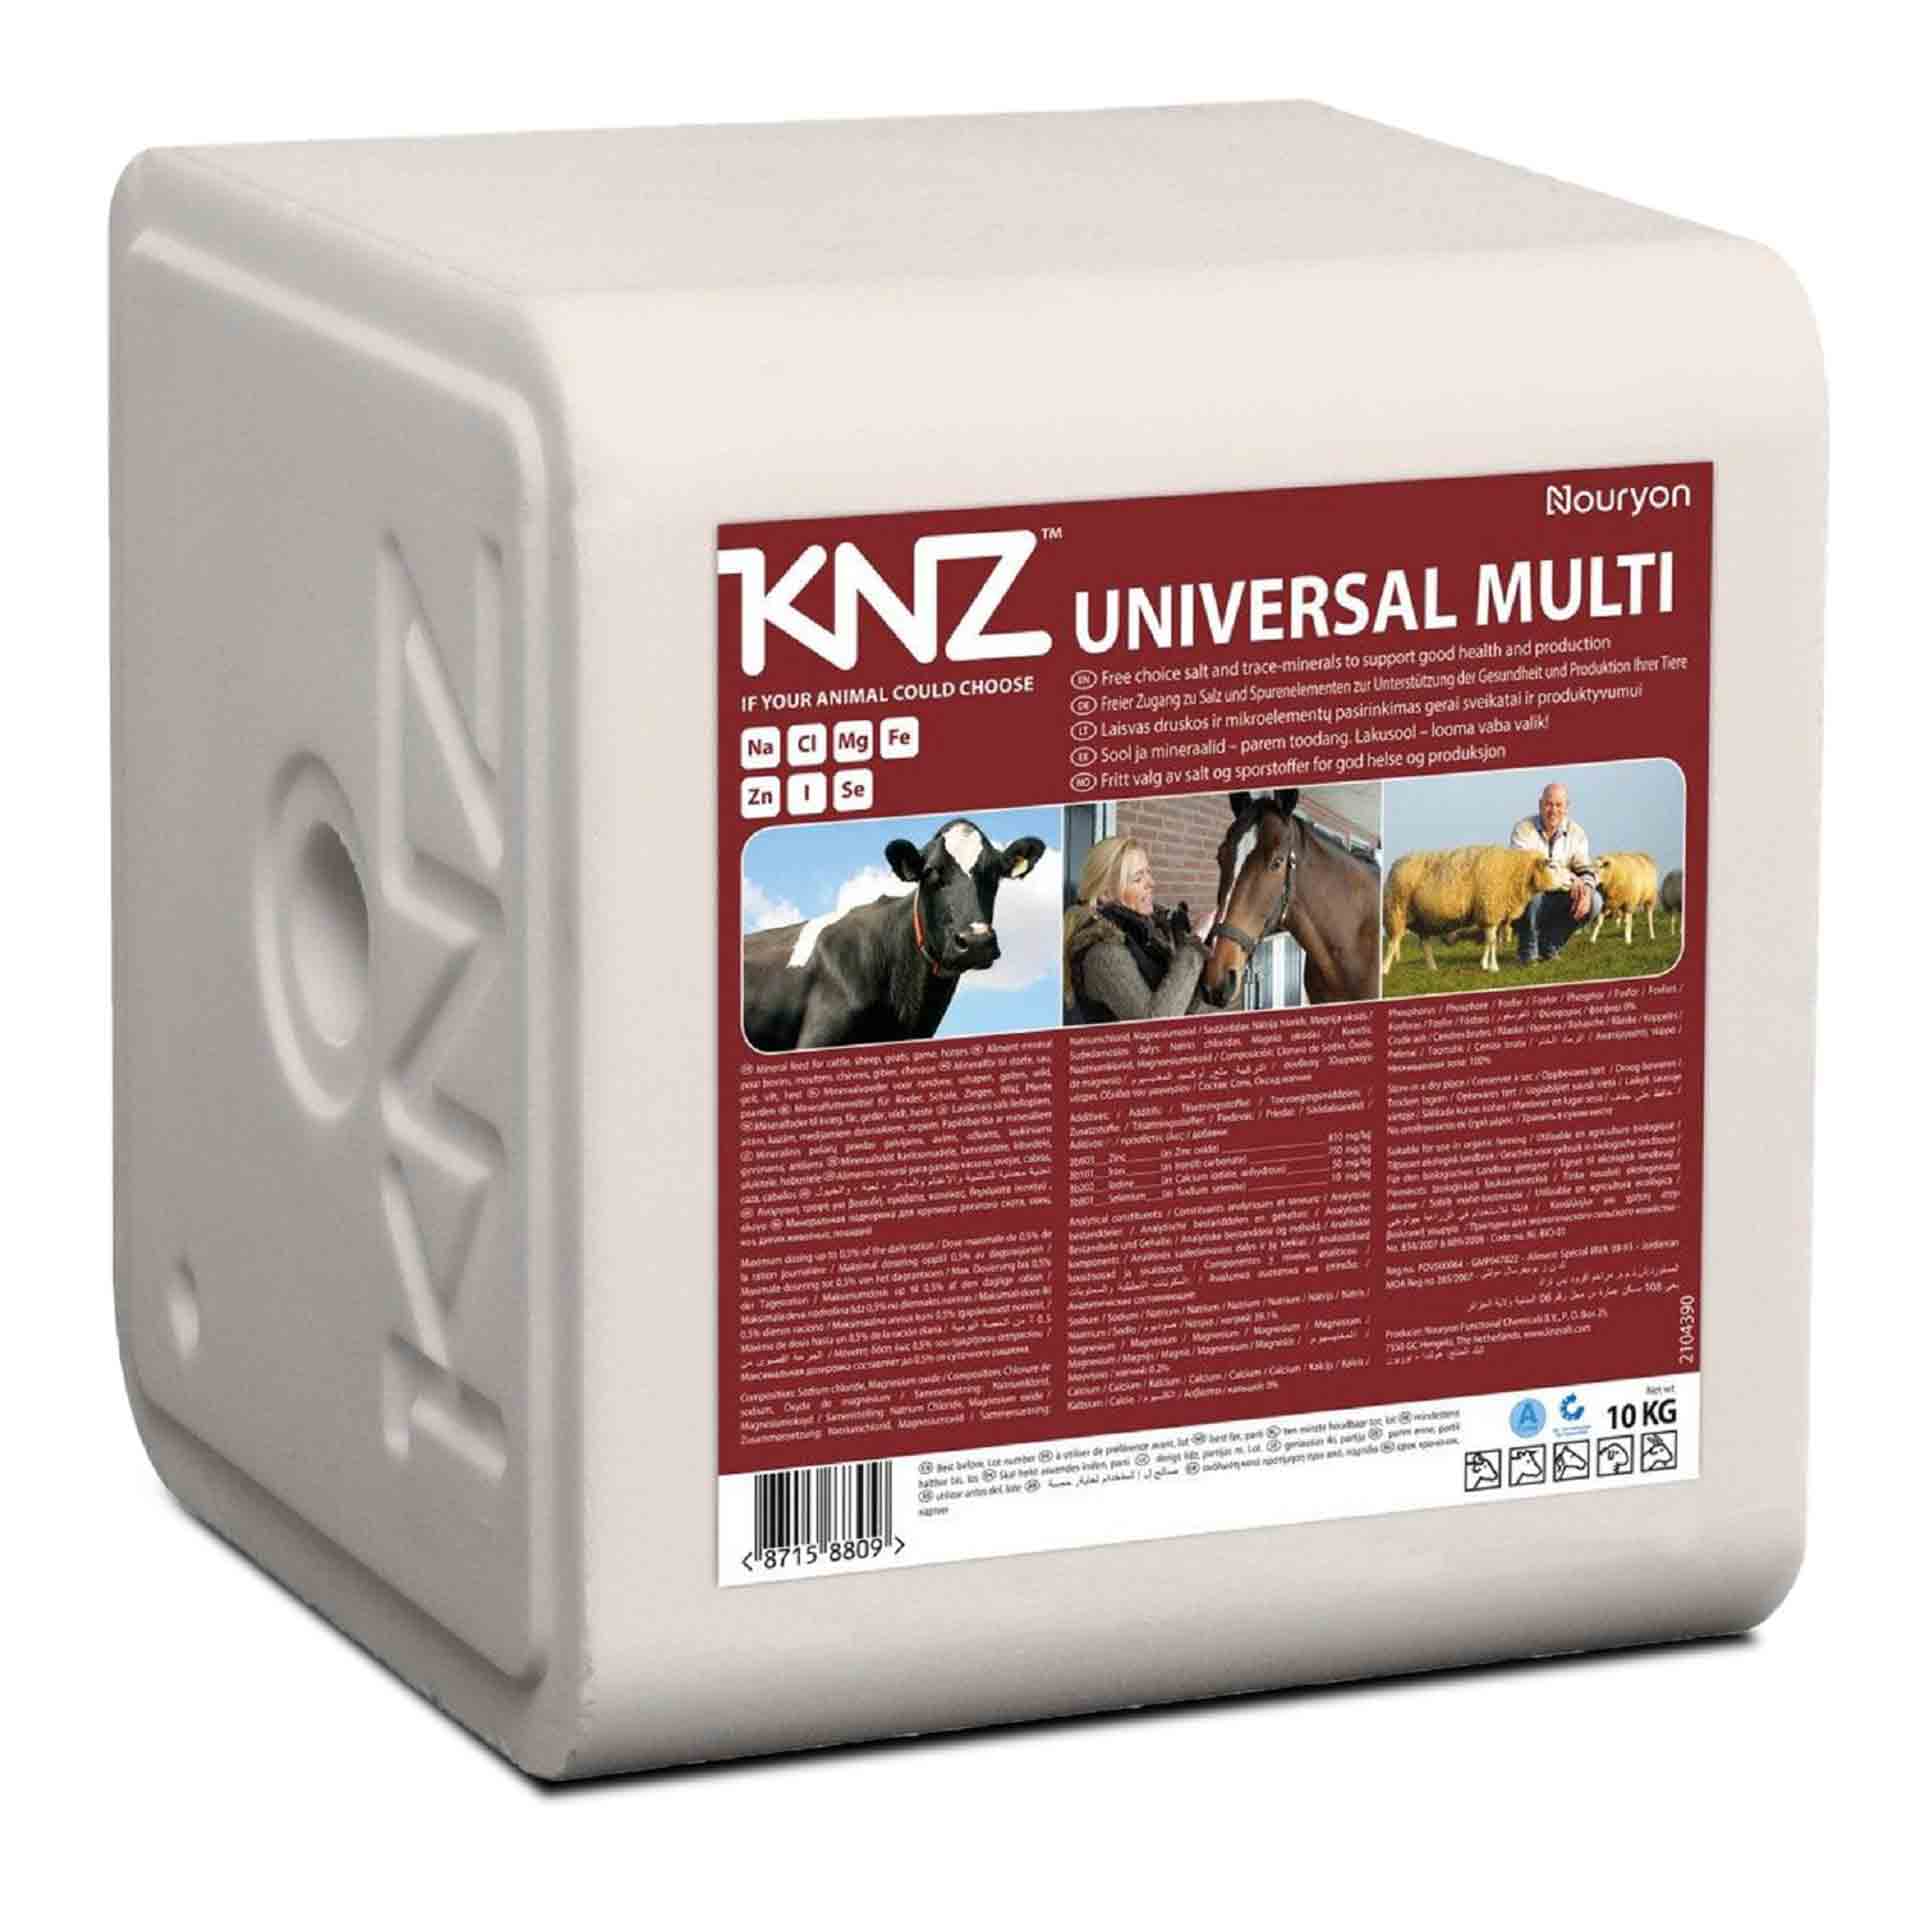 KNZ Universal Multi 10 kg Salzleckstein Nutztiere